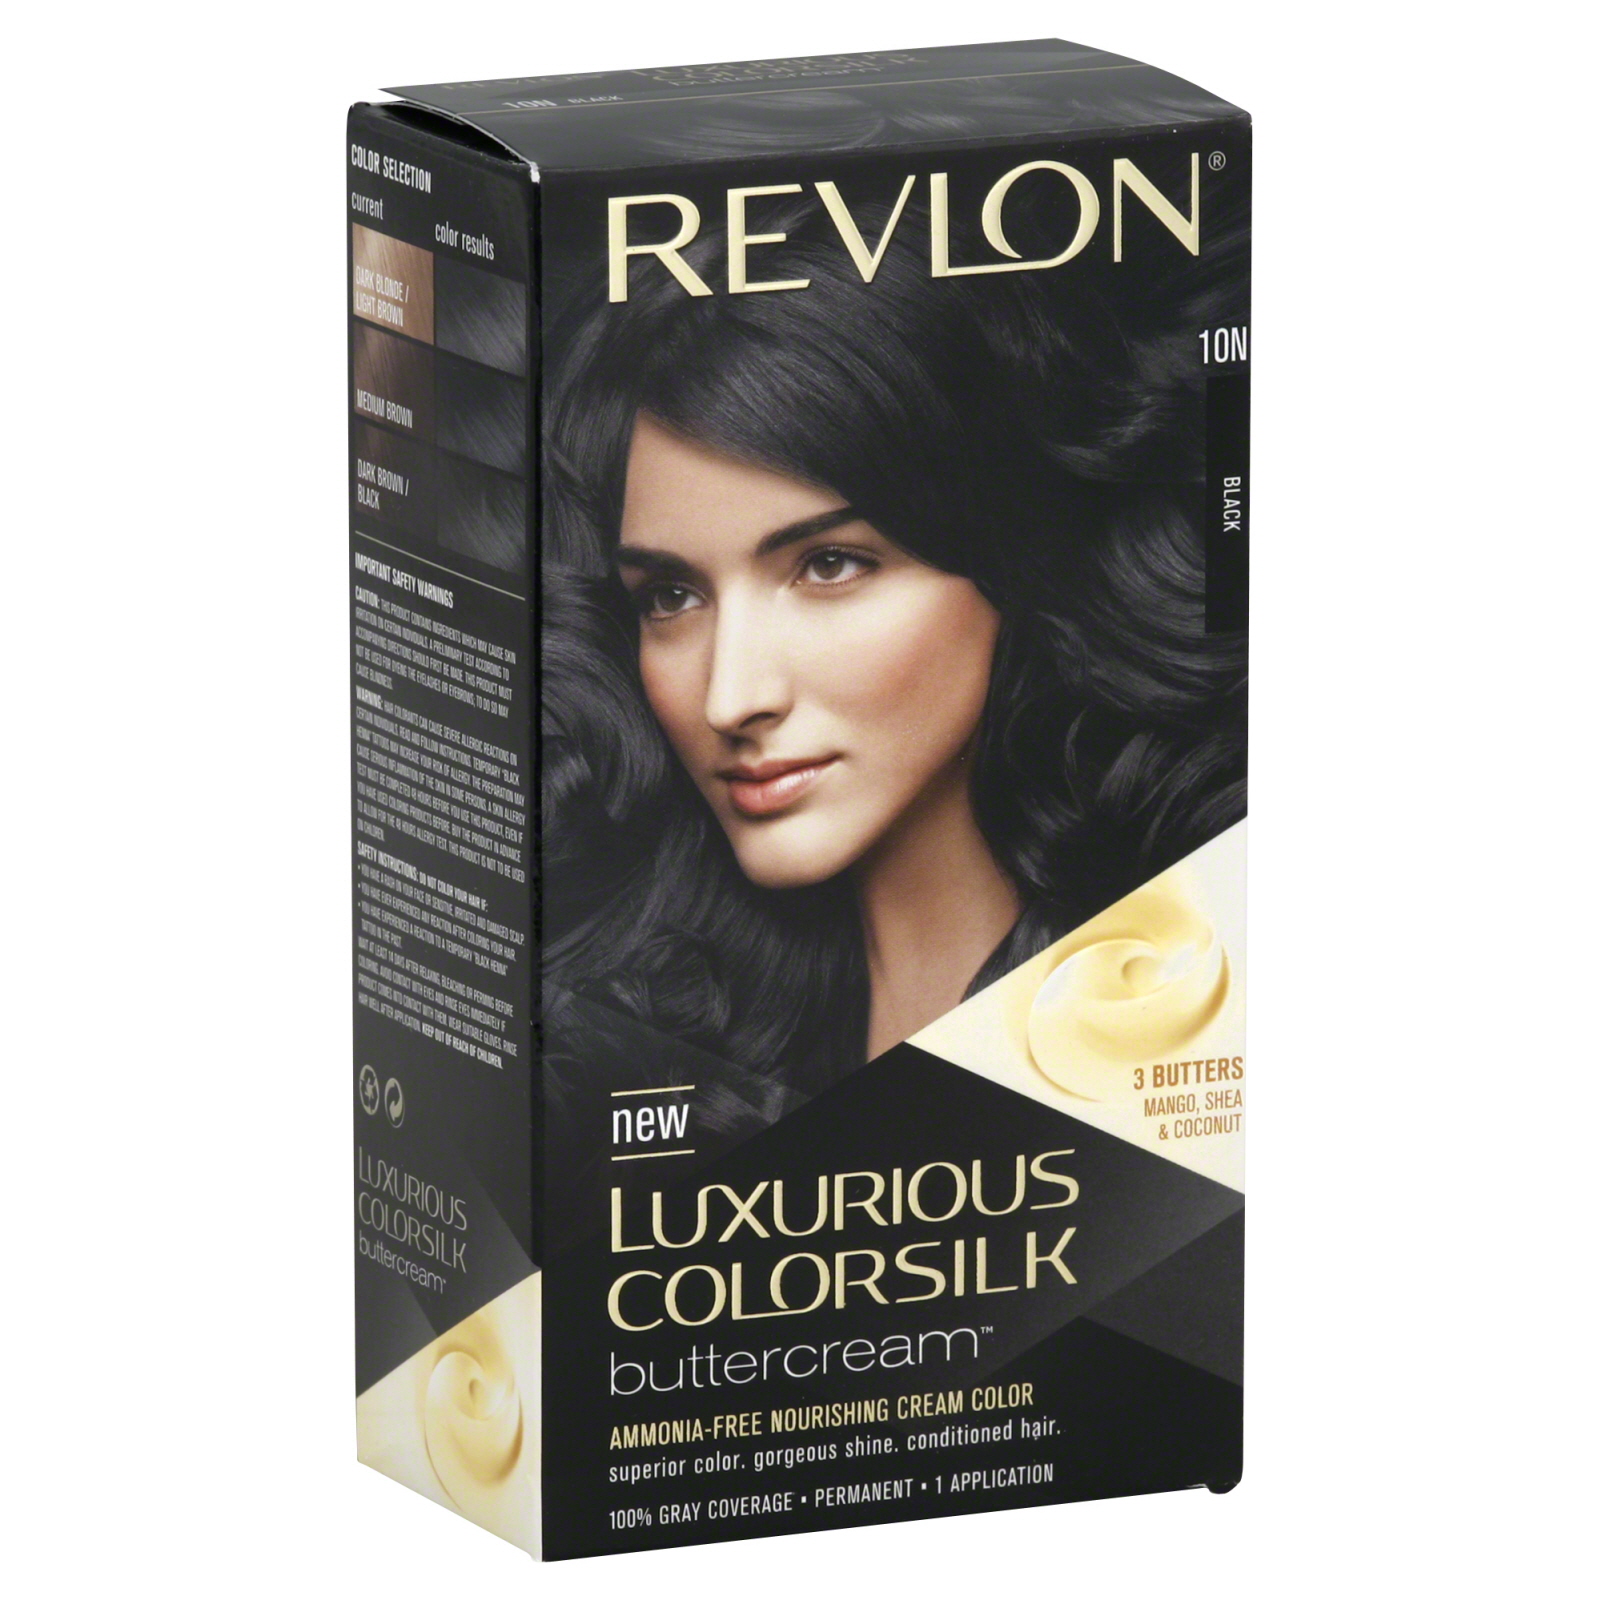 Revlon Luxurious Colorsilk Buttercream Permanent Color, Black